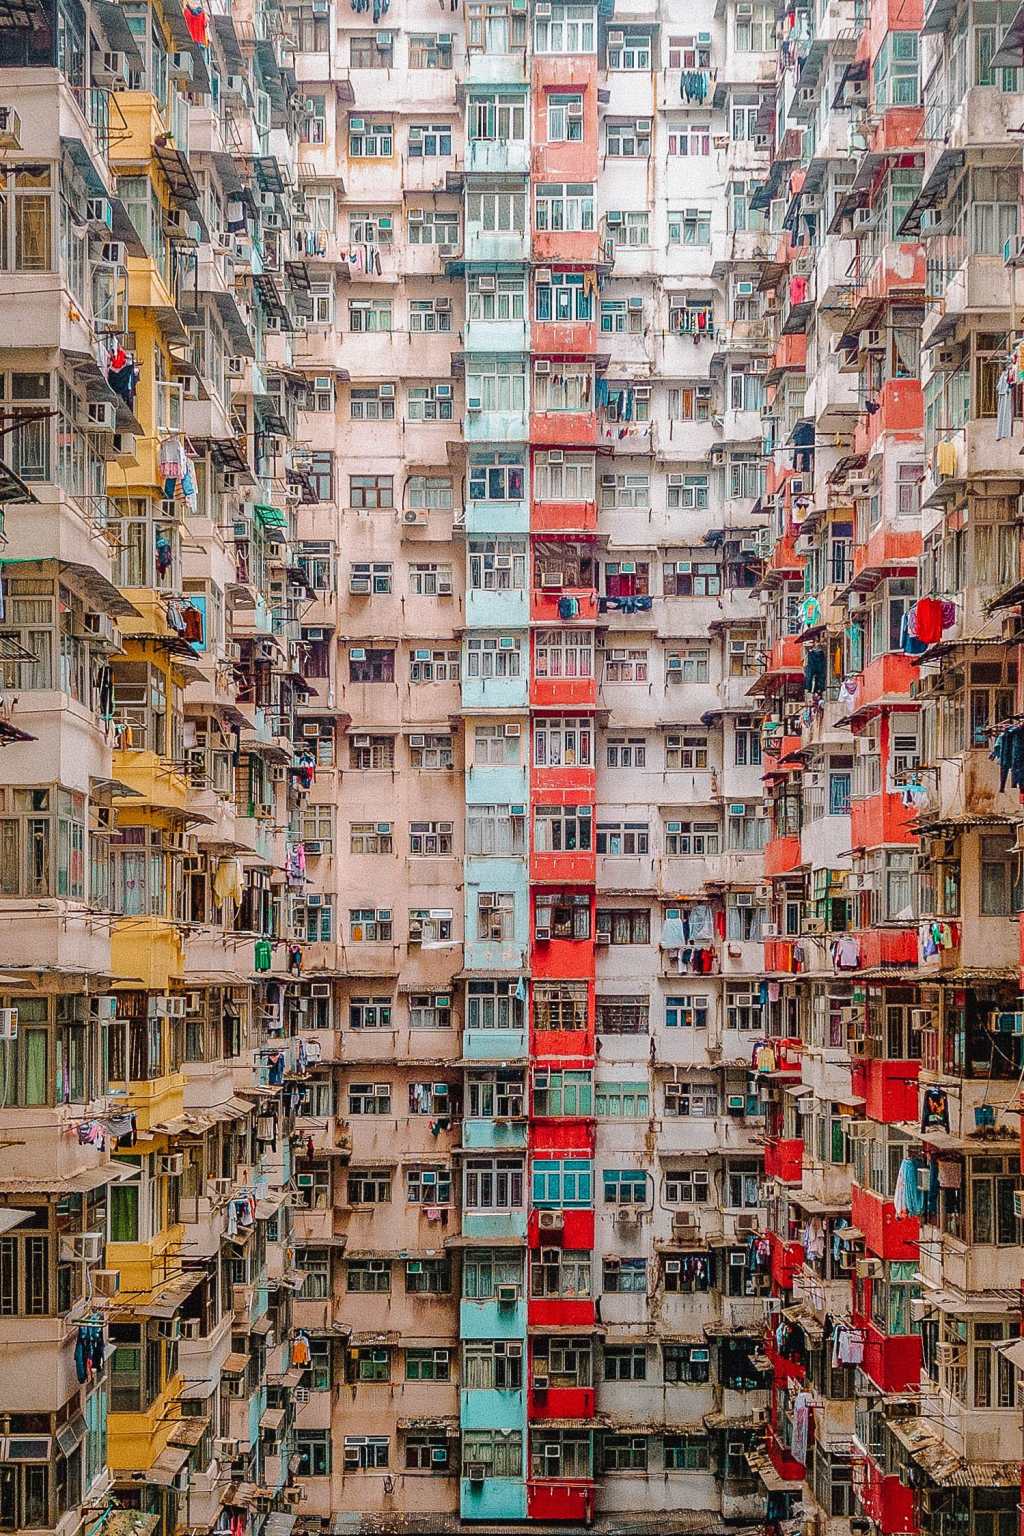 Tòa nhà Yik Cheong, khung cảnh ba tòa nhà xây thành hình chữ U với màu sắc rực rỡ sẽ khiến bức ảnh của bạn ấn tượng vô cùng.